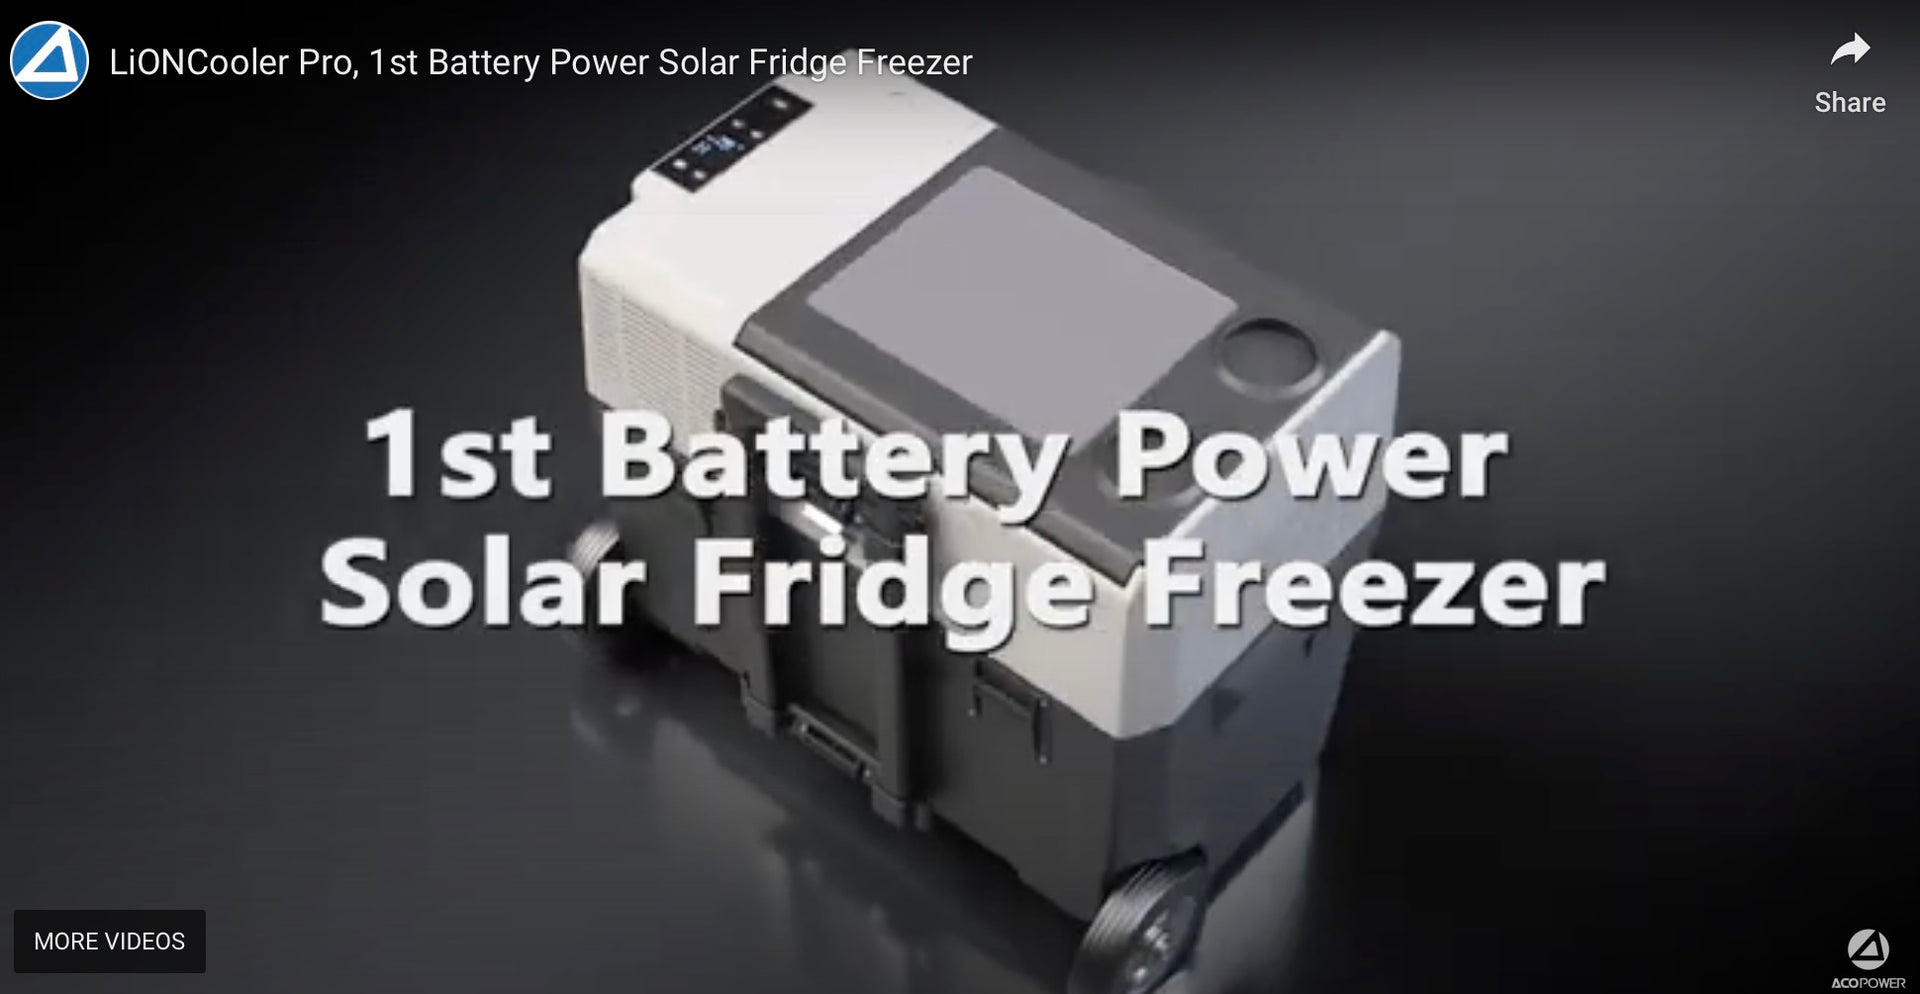 Load video: LiONCooler Pro, 1st Battery Power Solar Fridge Freezer